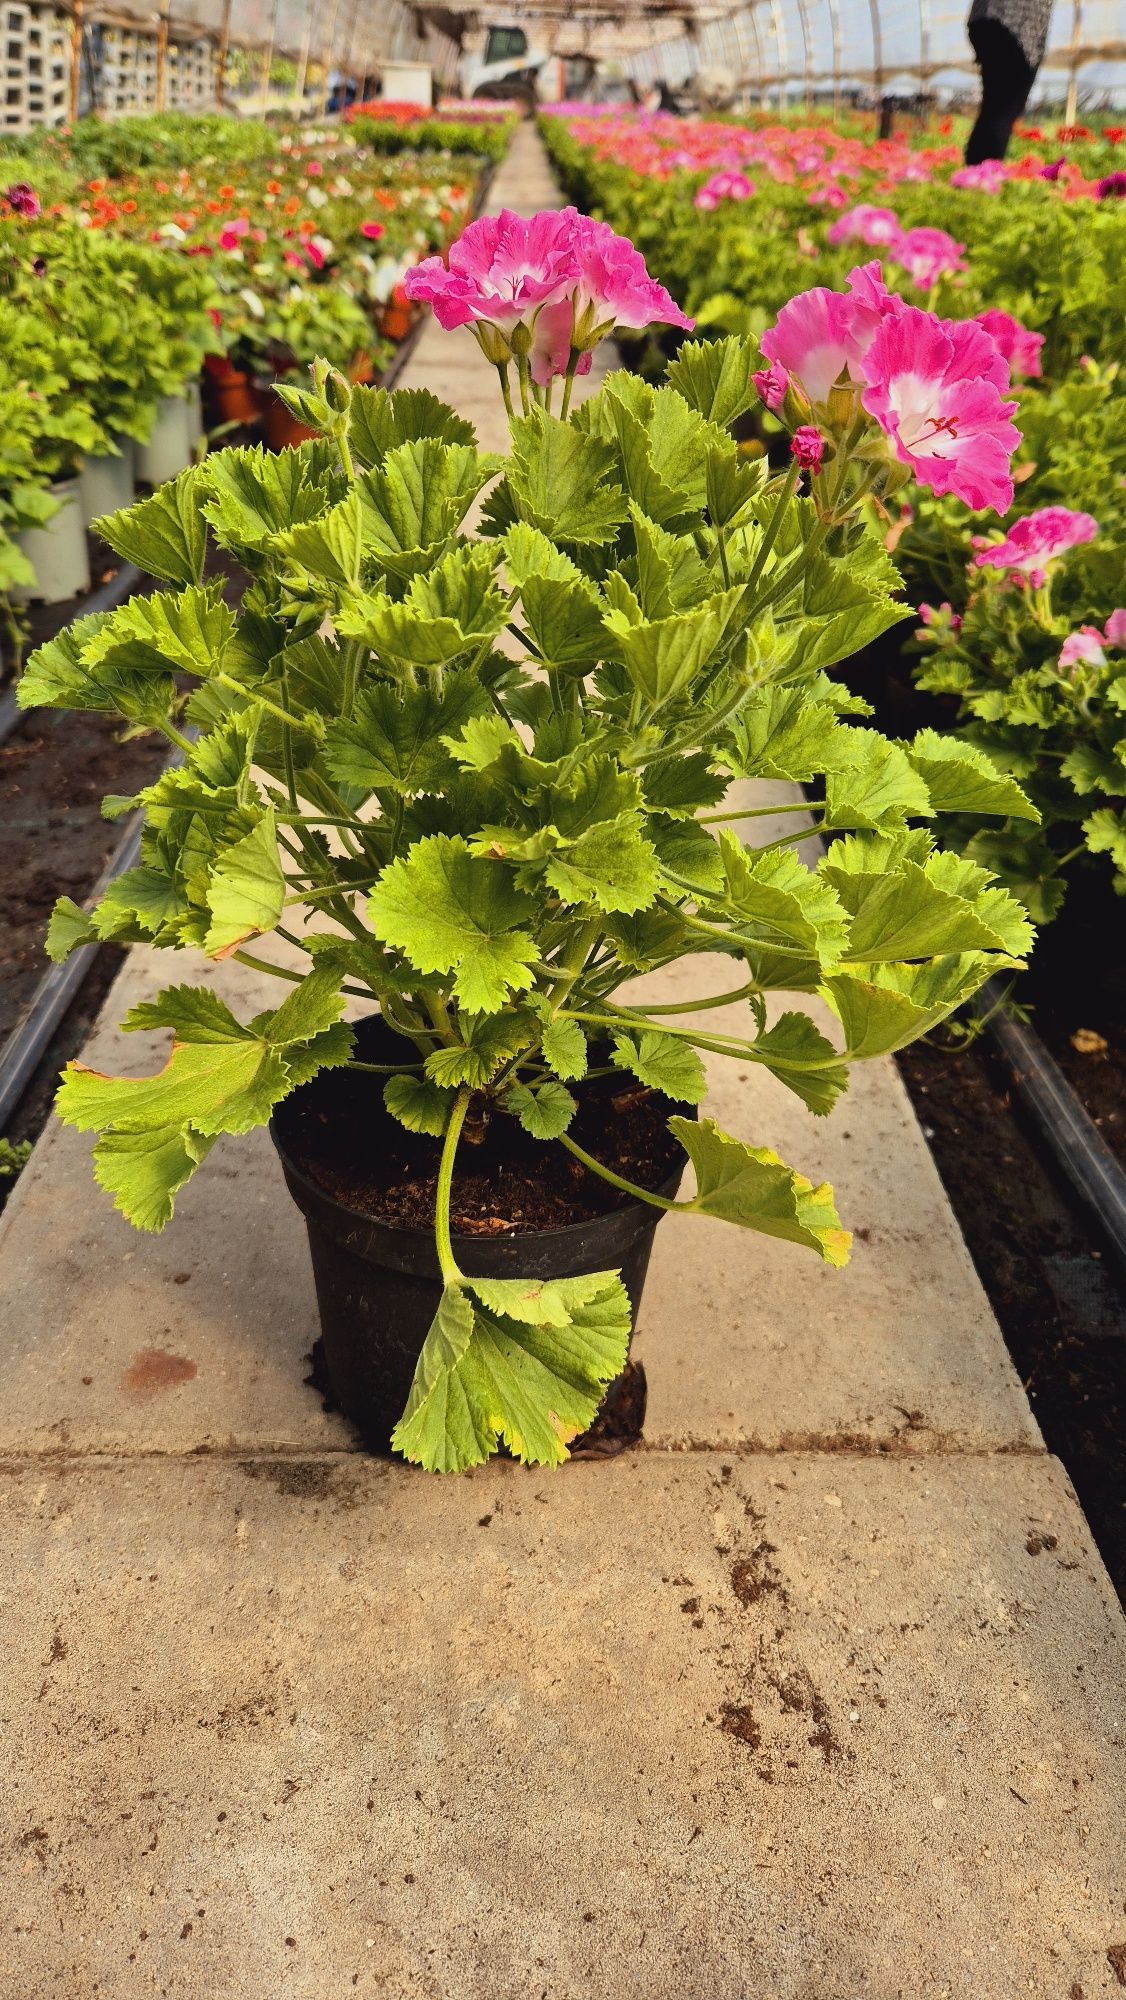 Pelargonium grandiflora / Muscate